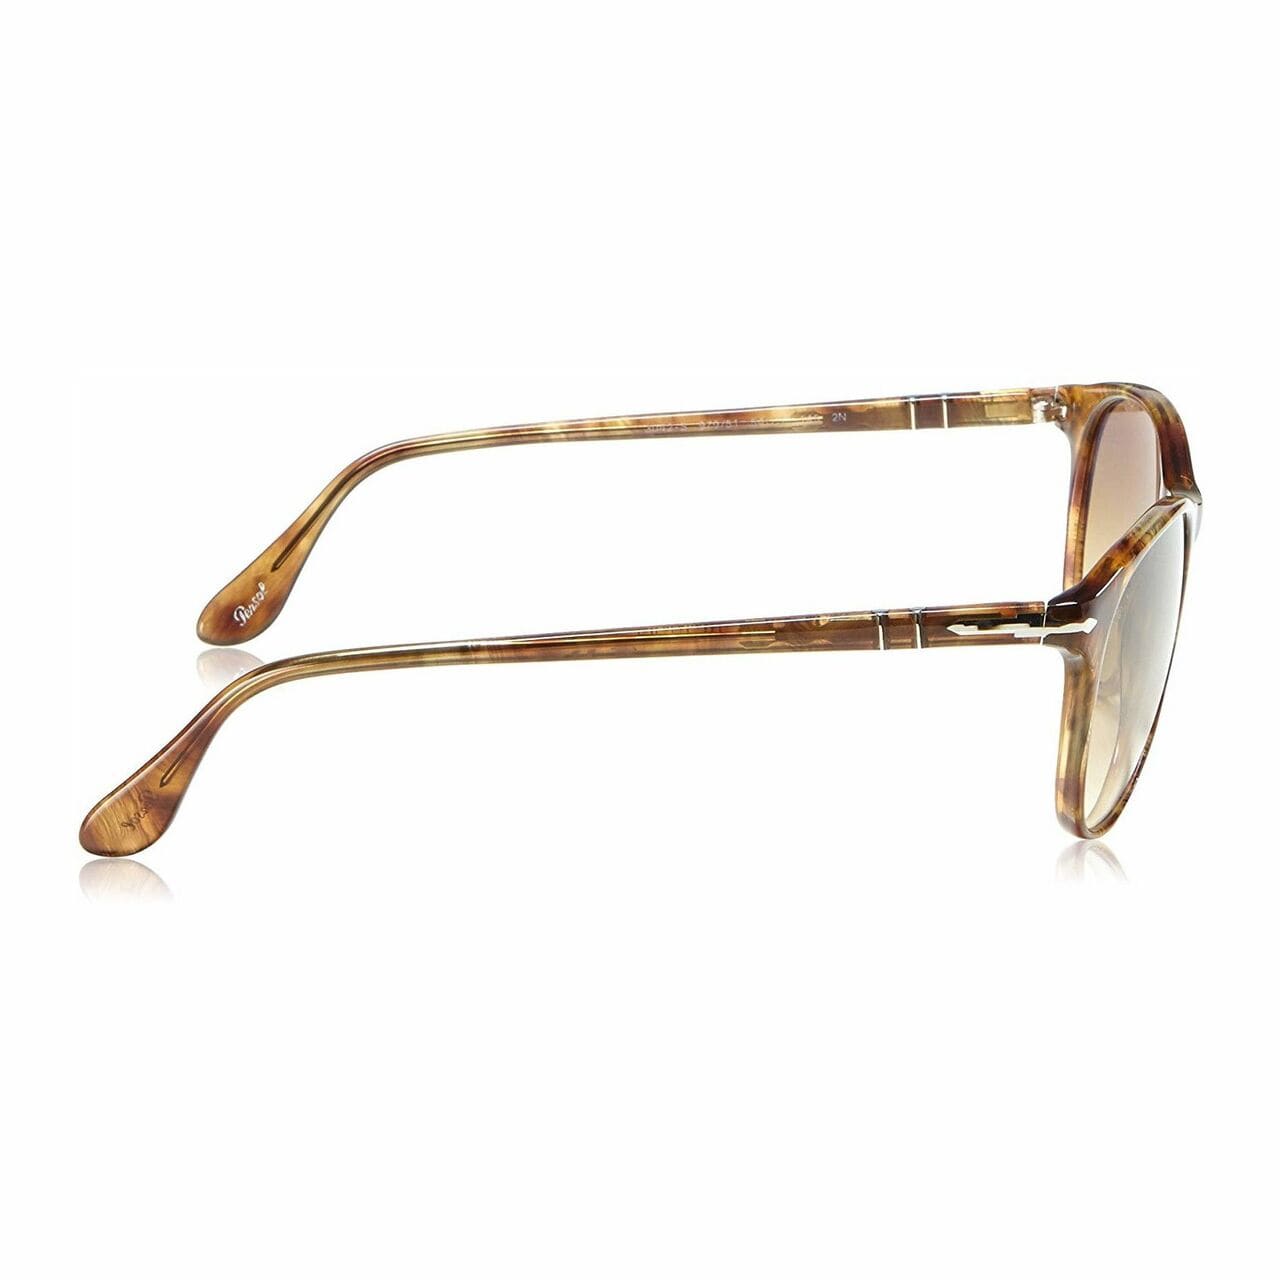 Persol PO3042S-979/51 Striped Beige Square Brown Lens Men's Sunglasses 713132571422